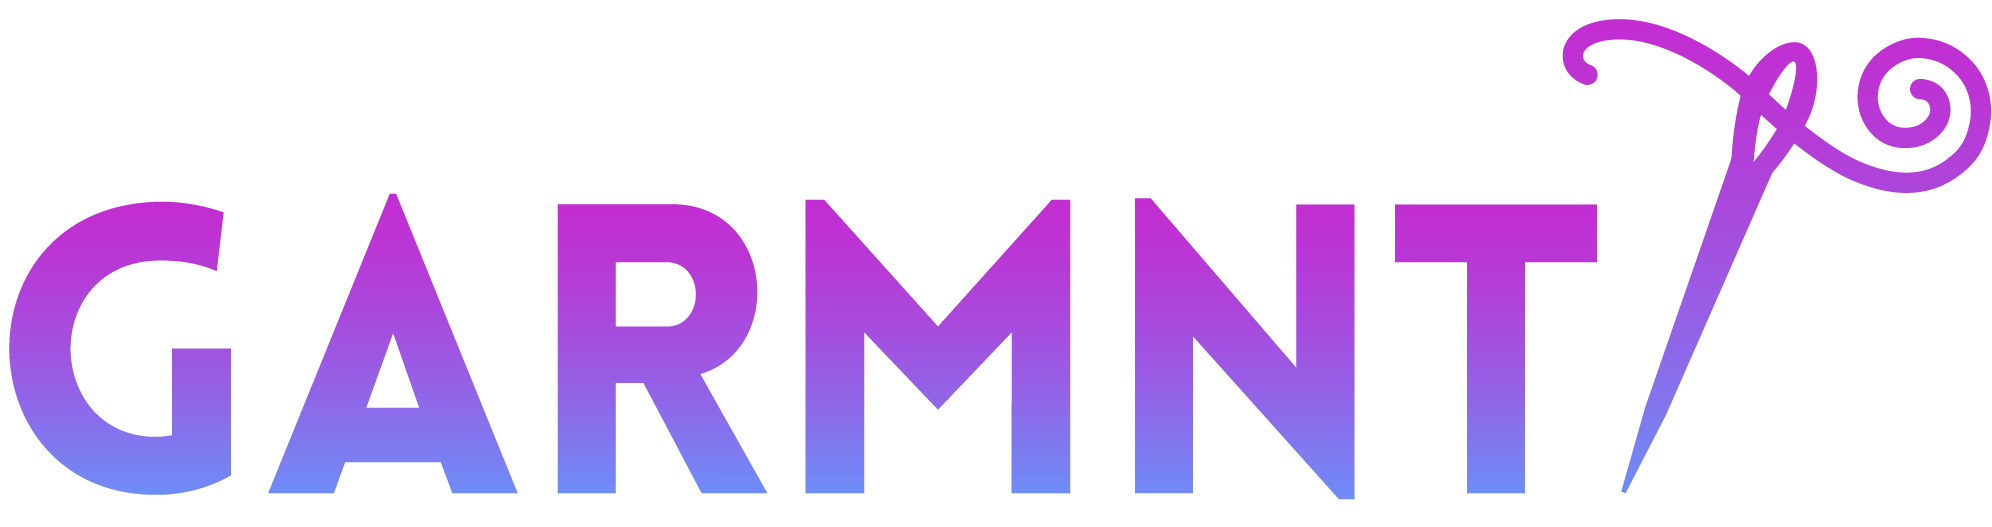 garmnt-logo.png